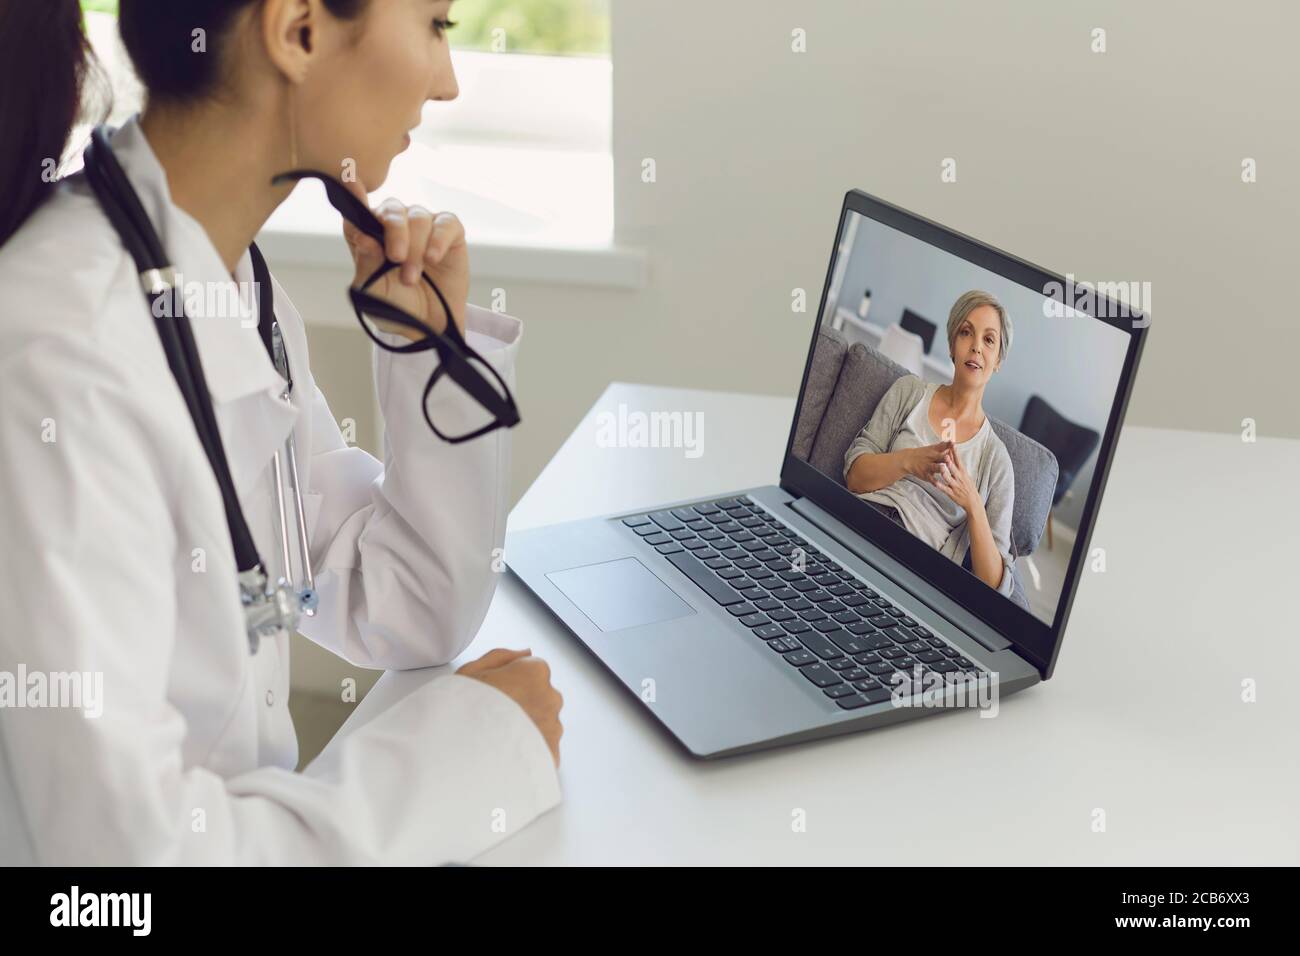 Consultation en ligne par un médecin. Une femme médecin écoute un patient âgé à l'aide d'un ordinateur portable d'appel vidéo. Banque D'Images